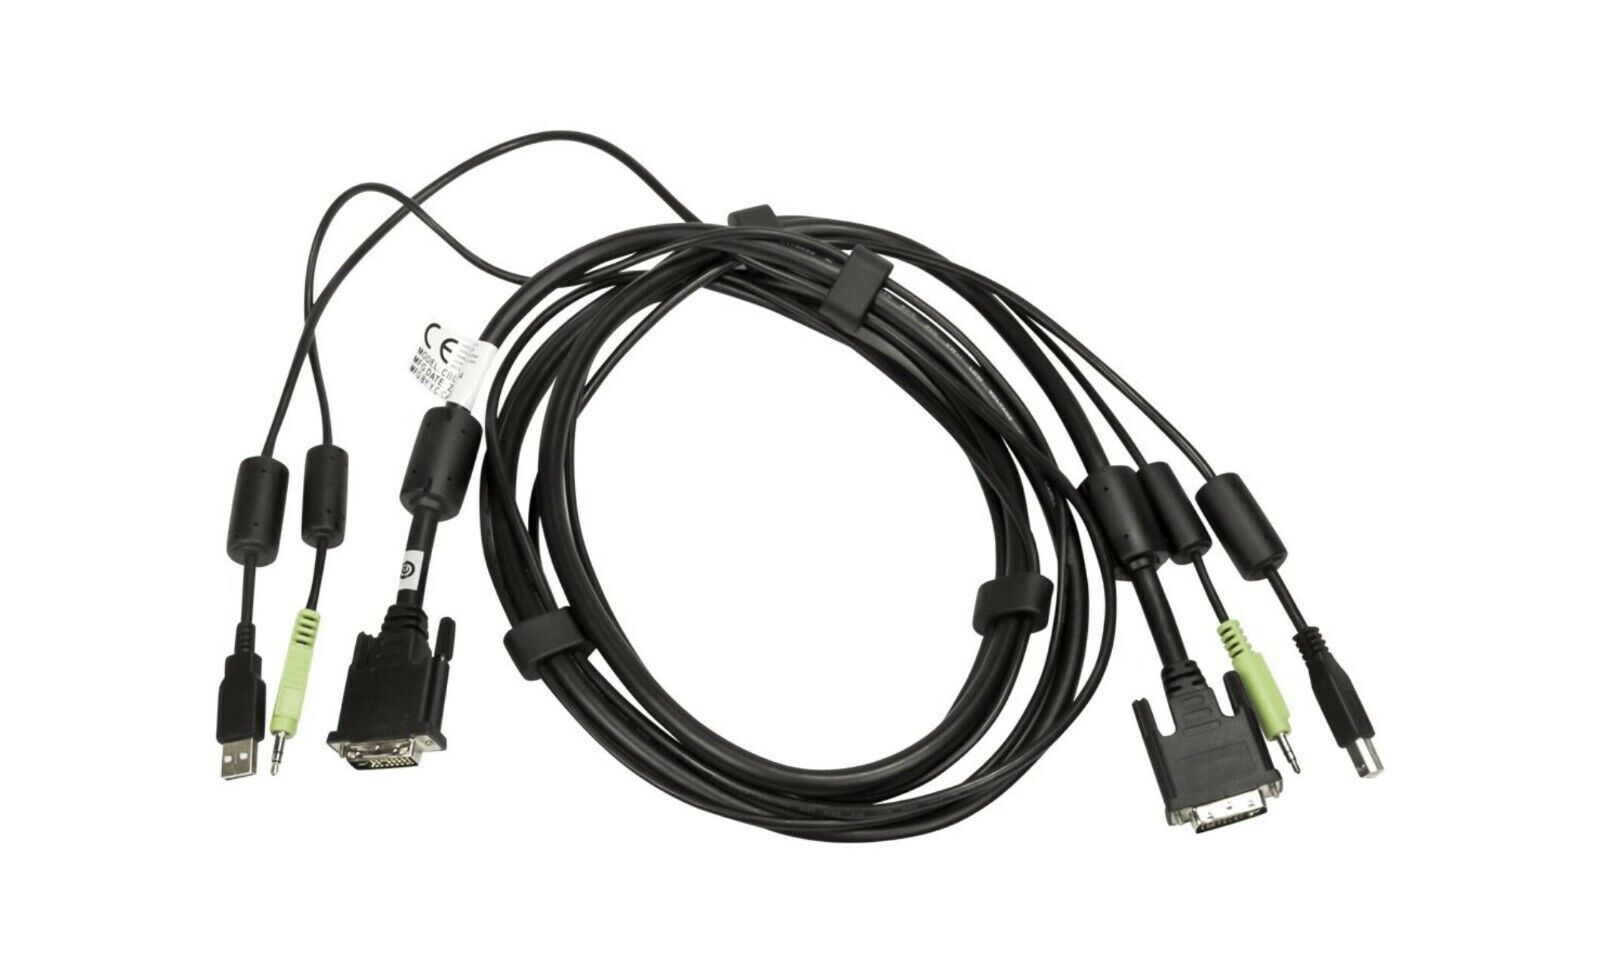 NEW CBL0094 Avocent 6FT DVI DVI-I Dual Link USB 3.5 mm Audio KVM Switch Cable